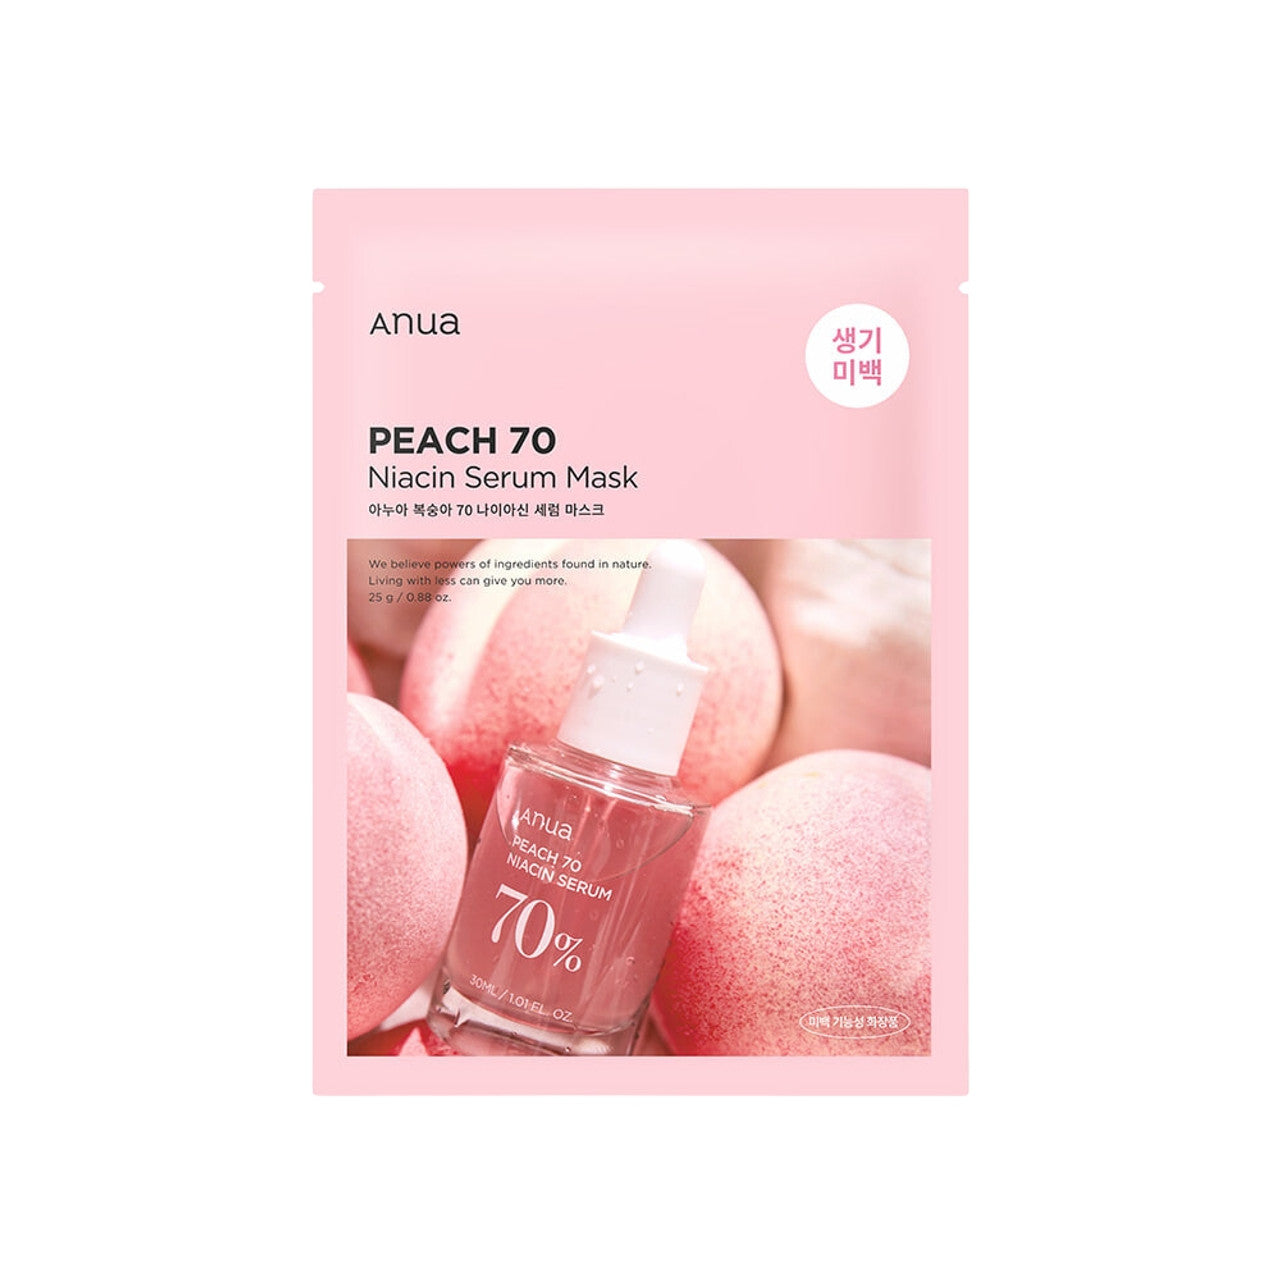 Anua - Peach 70 Niacin Serum Mask